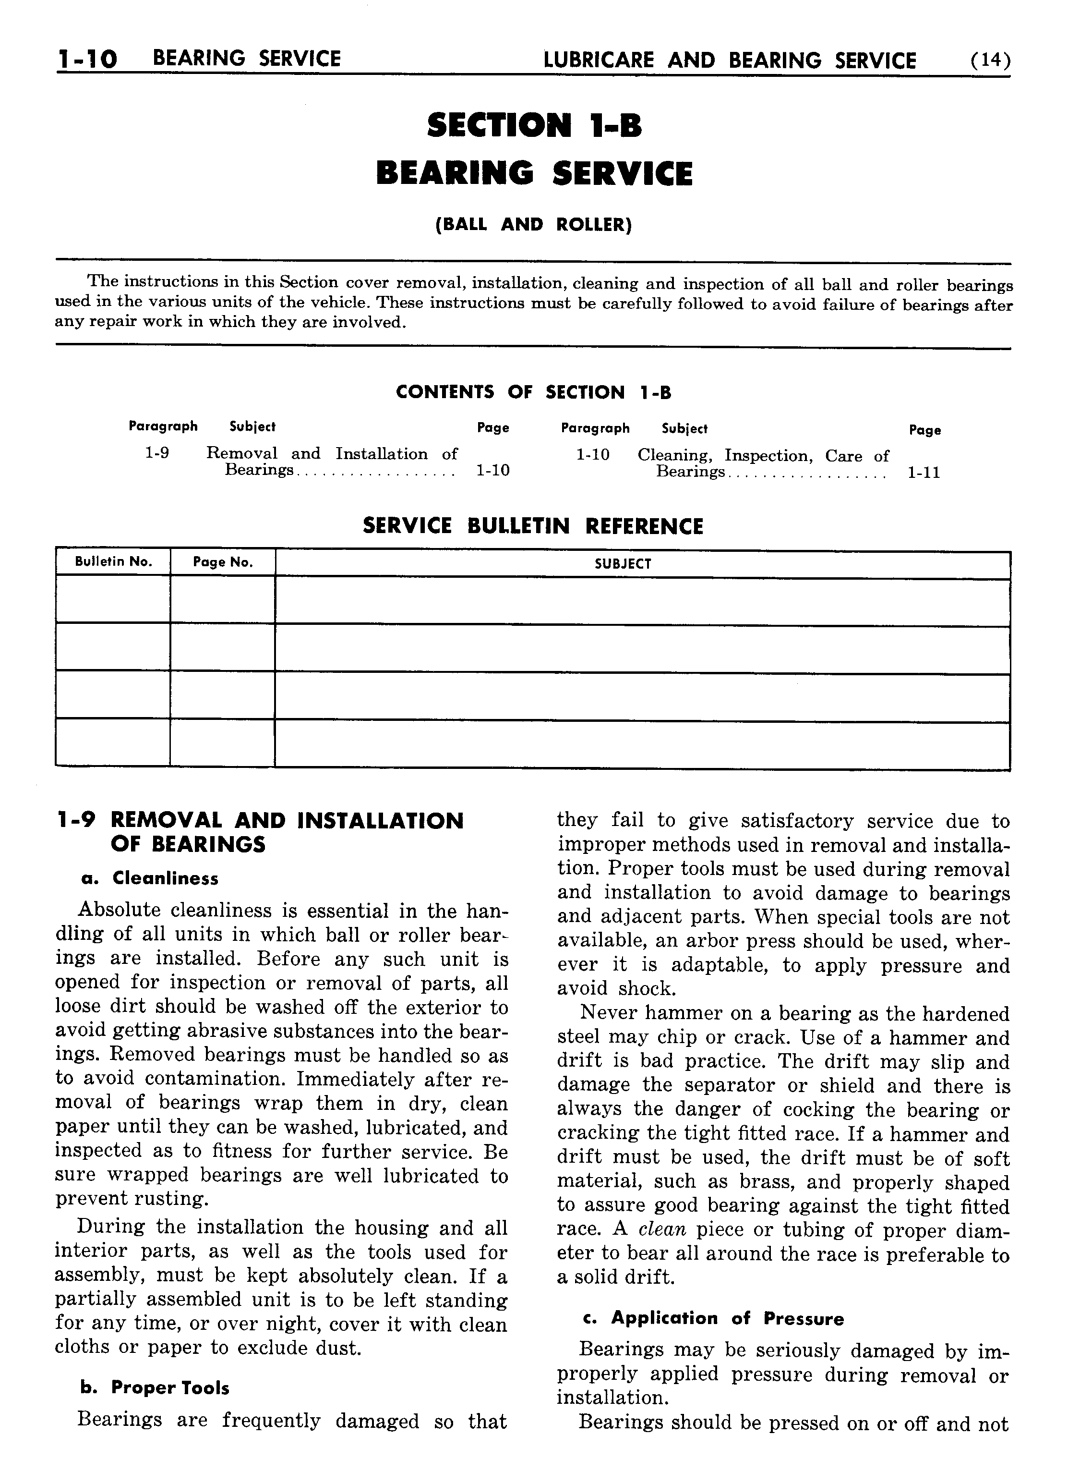 n_02 1954 Buick Shop Manual - Lubricare-010-010.jpg